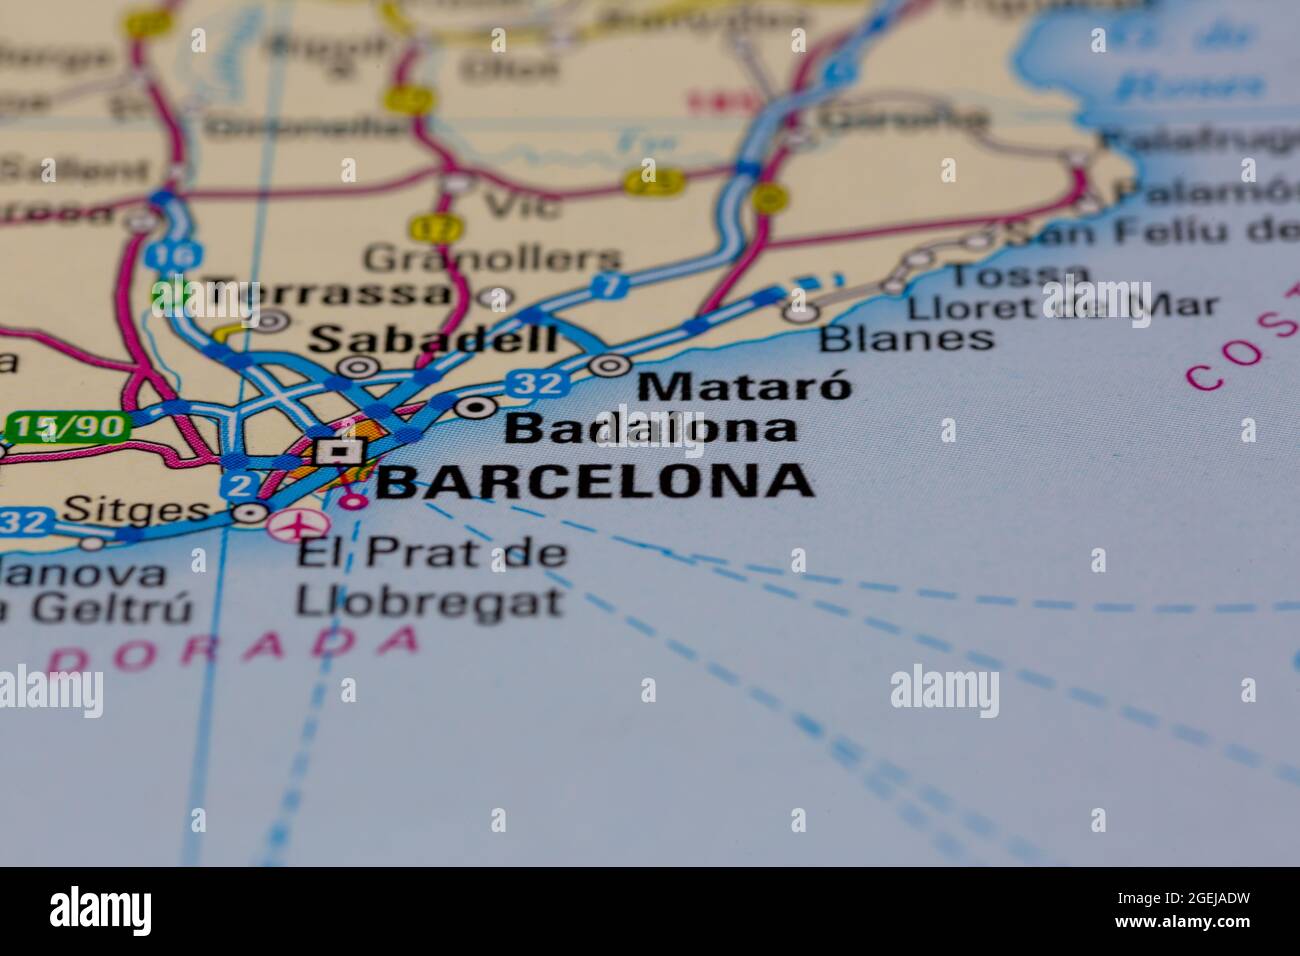 Badalona España aparece en un mapa de carreteras o en un mapa geográfico Foto de stock